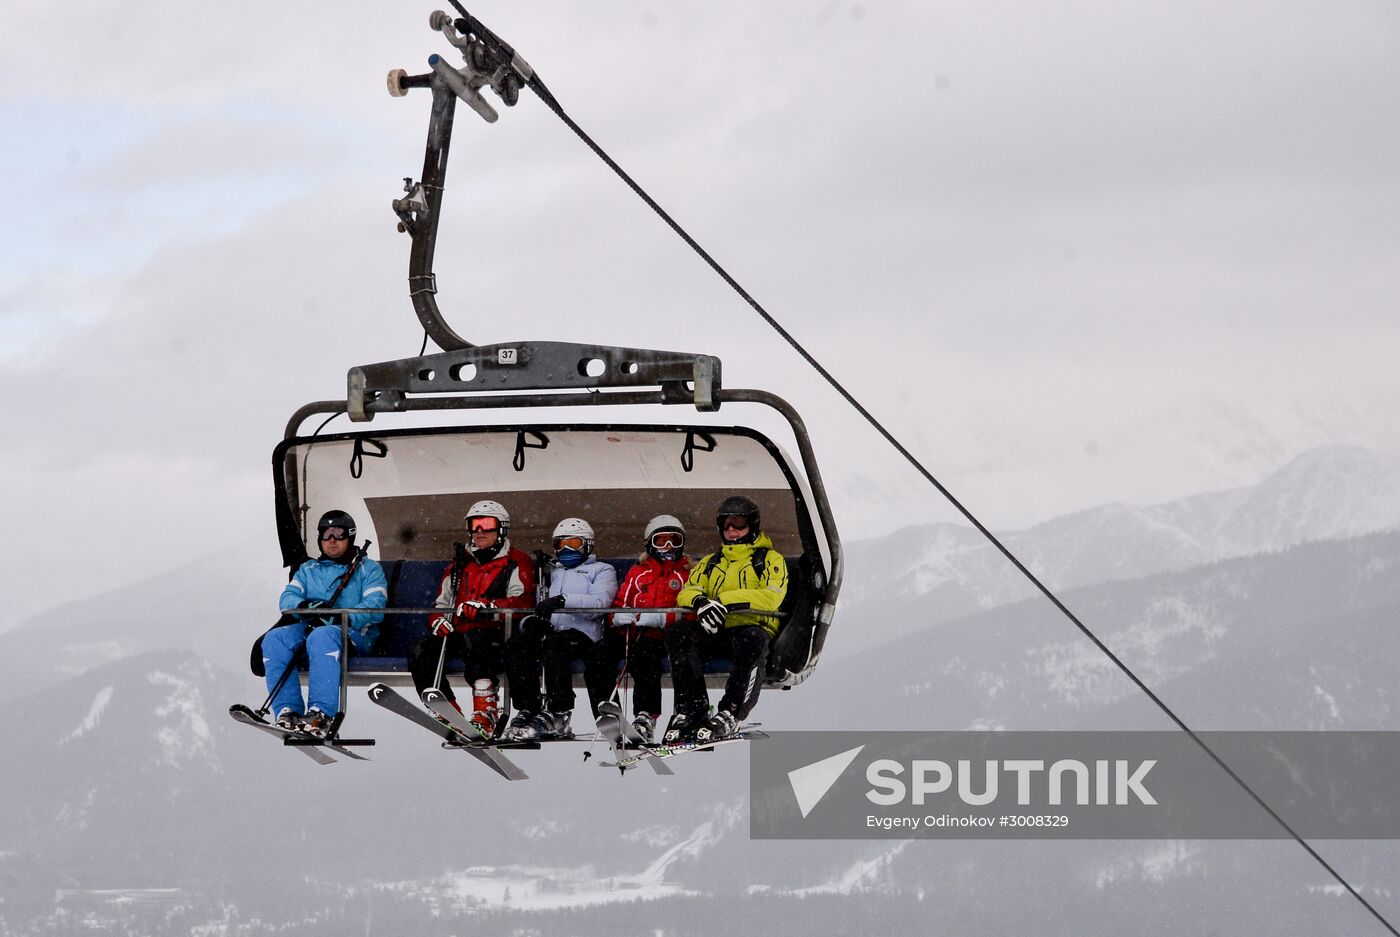 Zakopane ski resorts